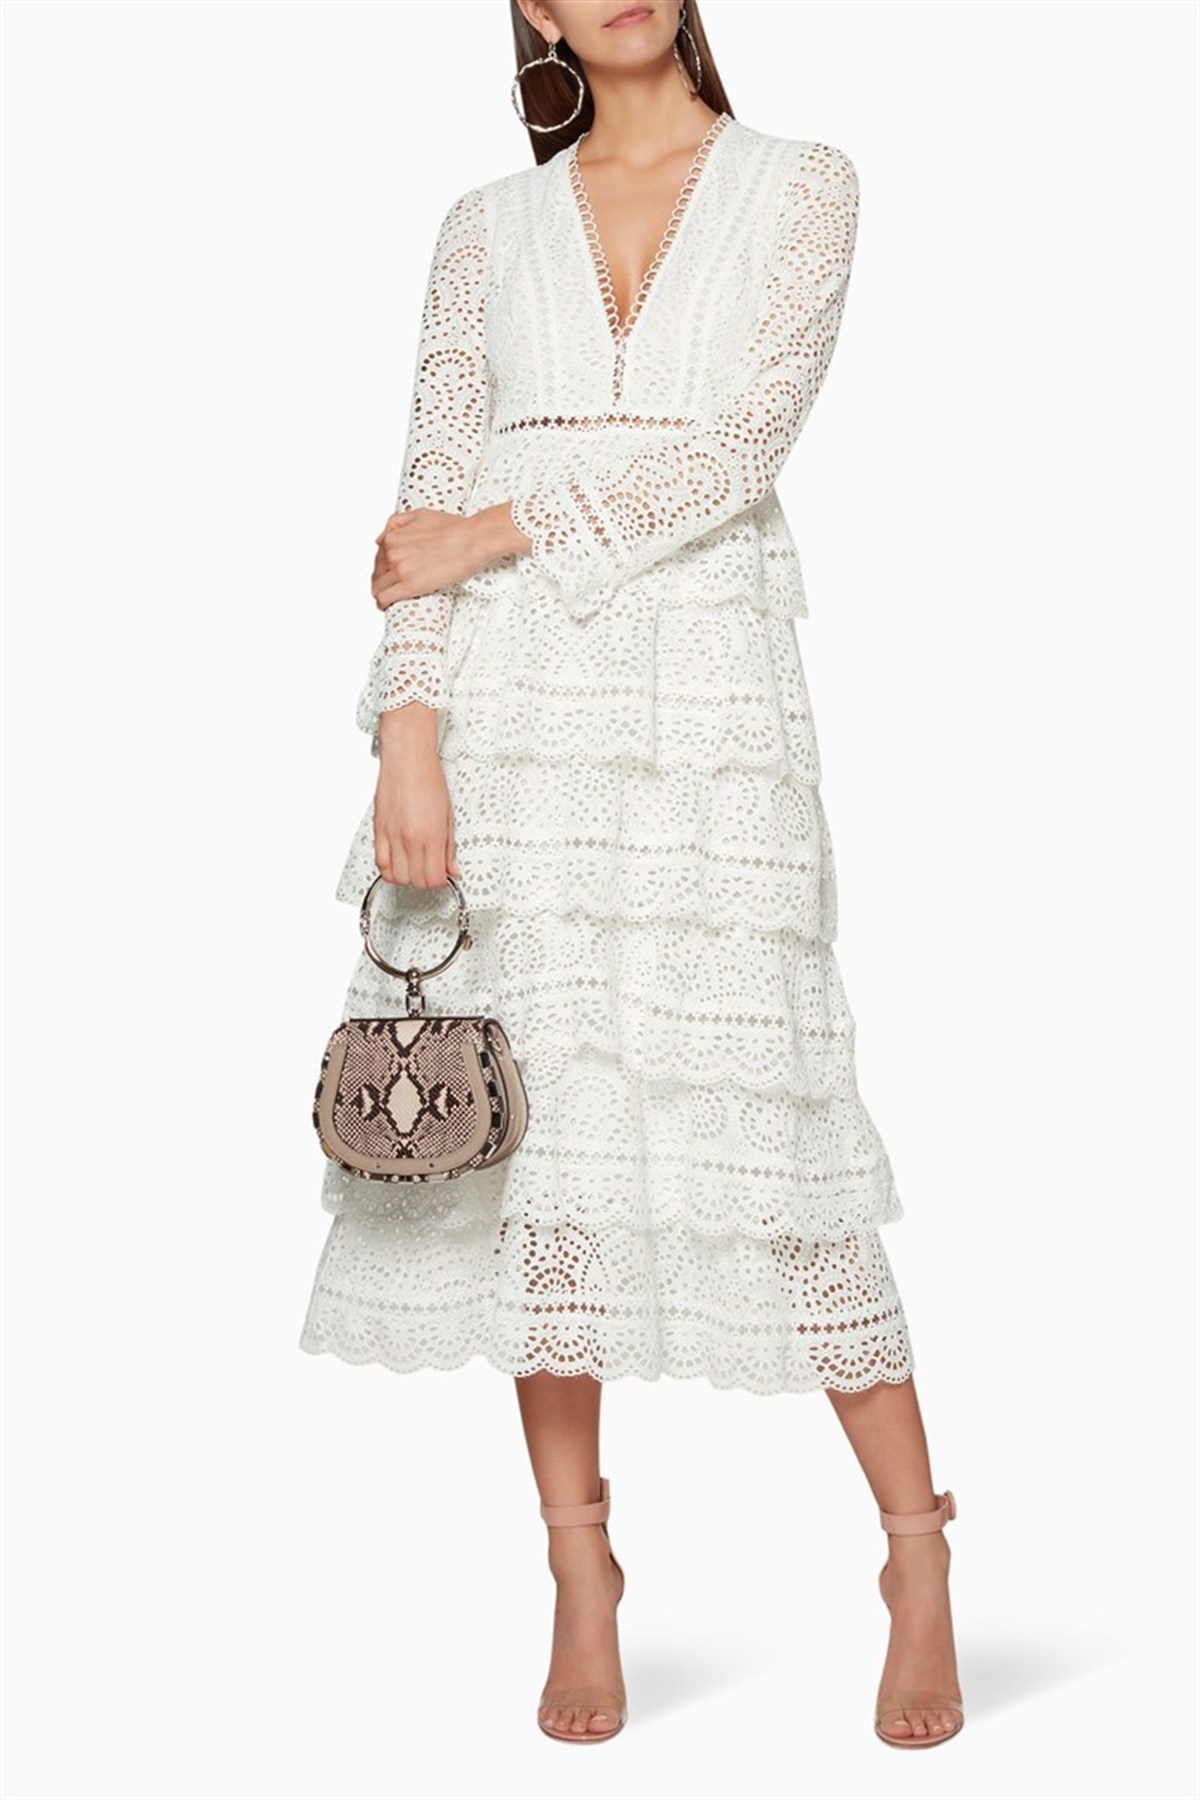 Beyaz Pileli Tasarım Elbise - Deep Atelier